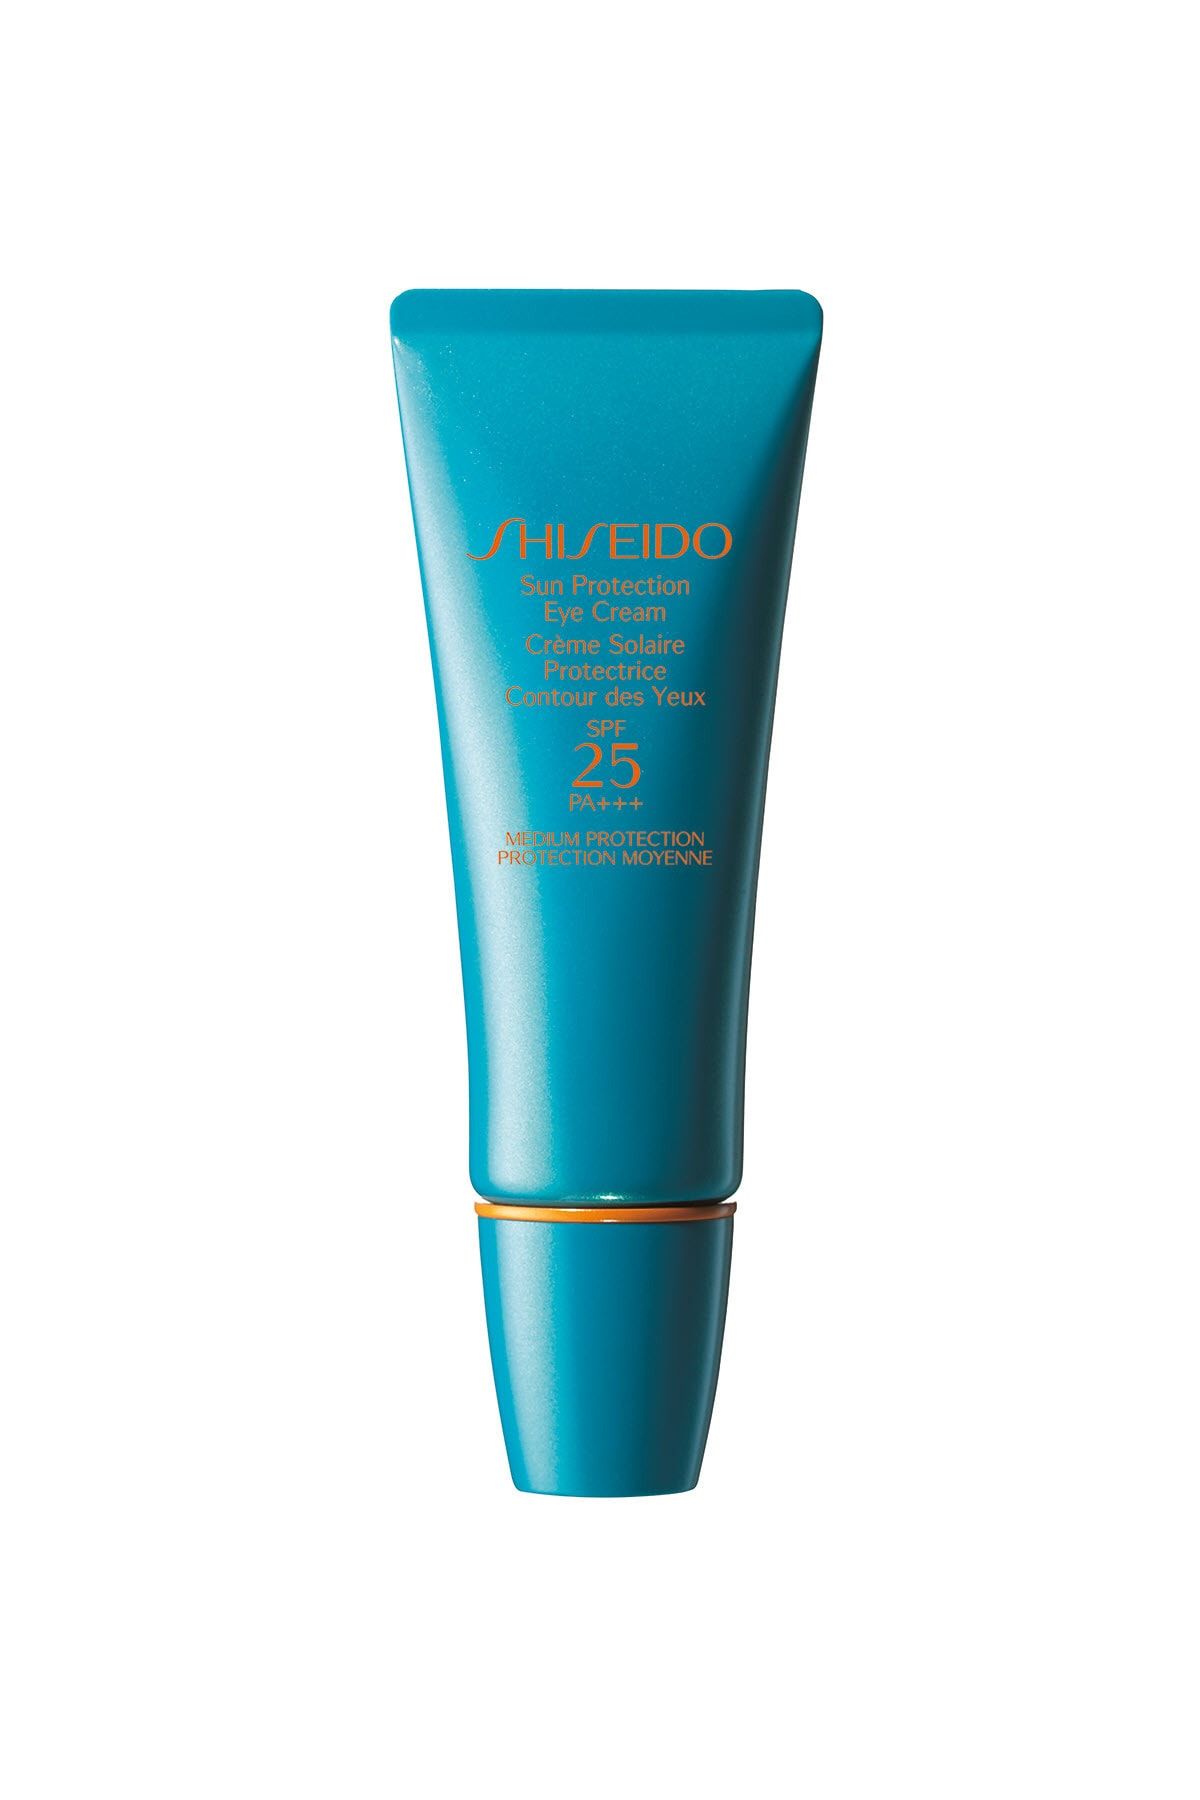 Shiseido Sun Protection Eye Cream Spf 25 -15 ml - Göz çevresi için UV ışınlarına karşı koruyucu krem